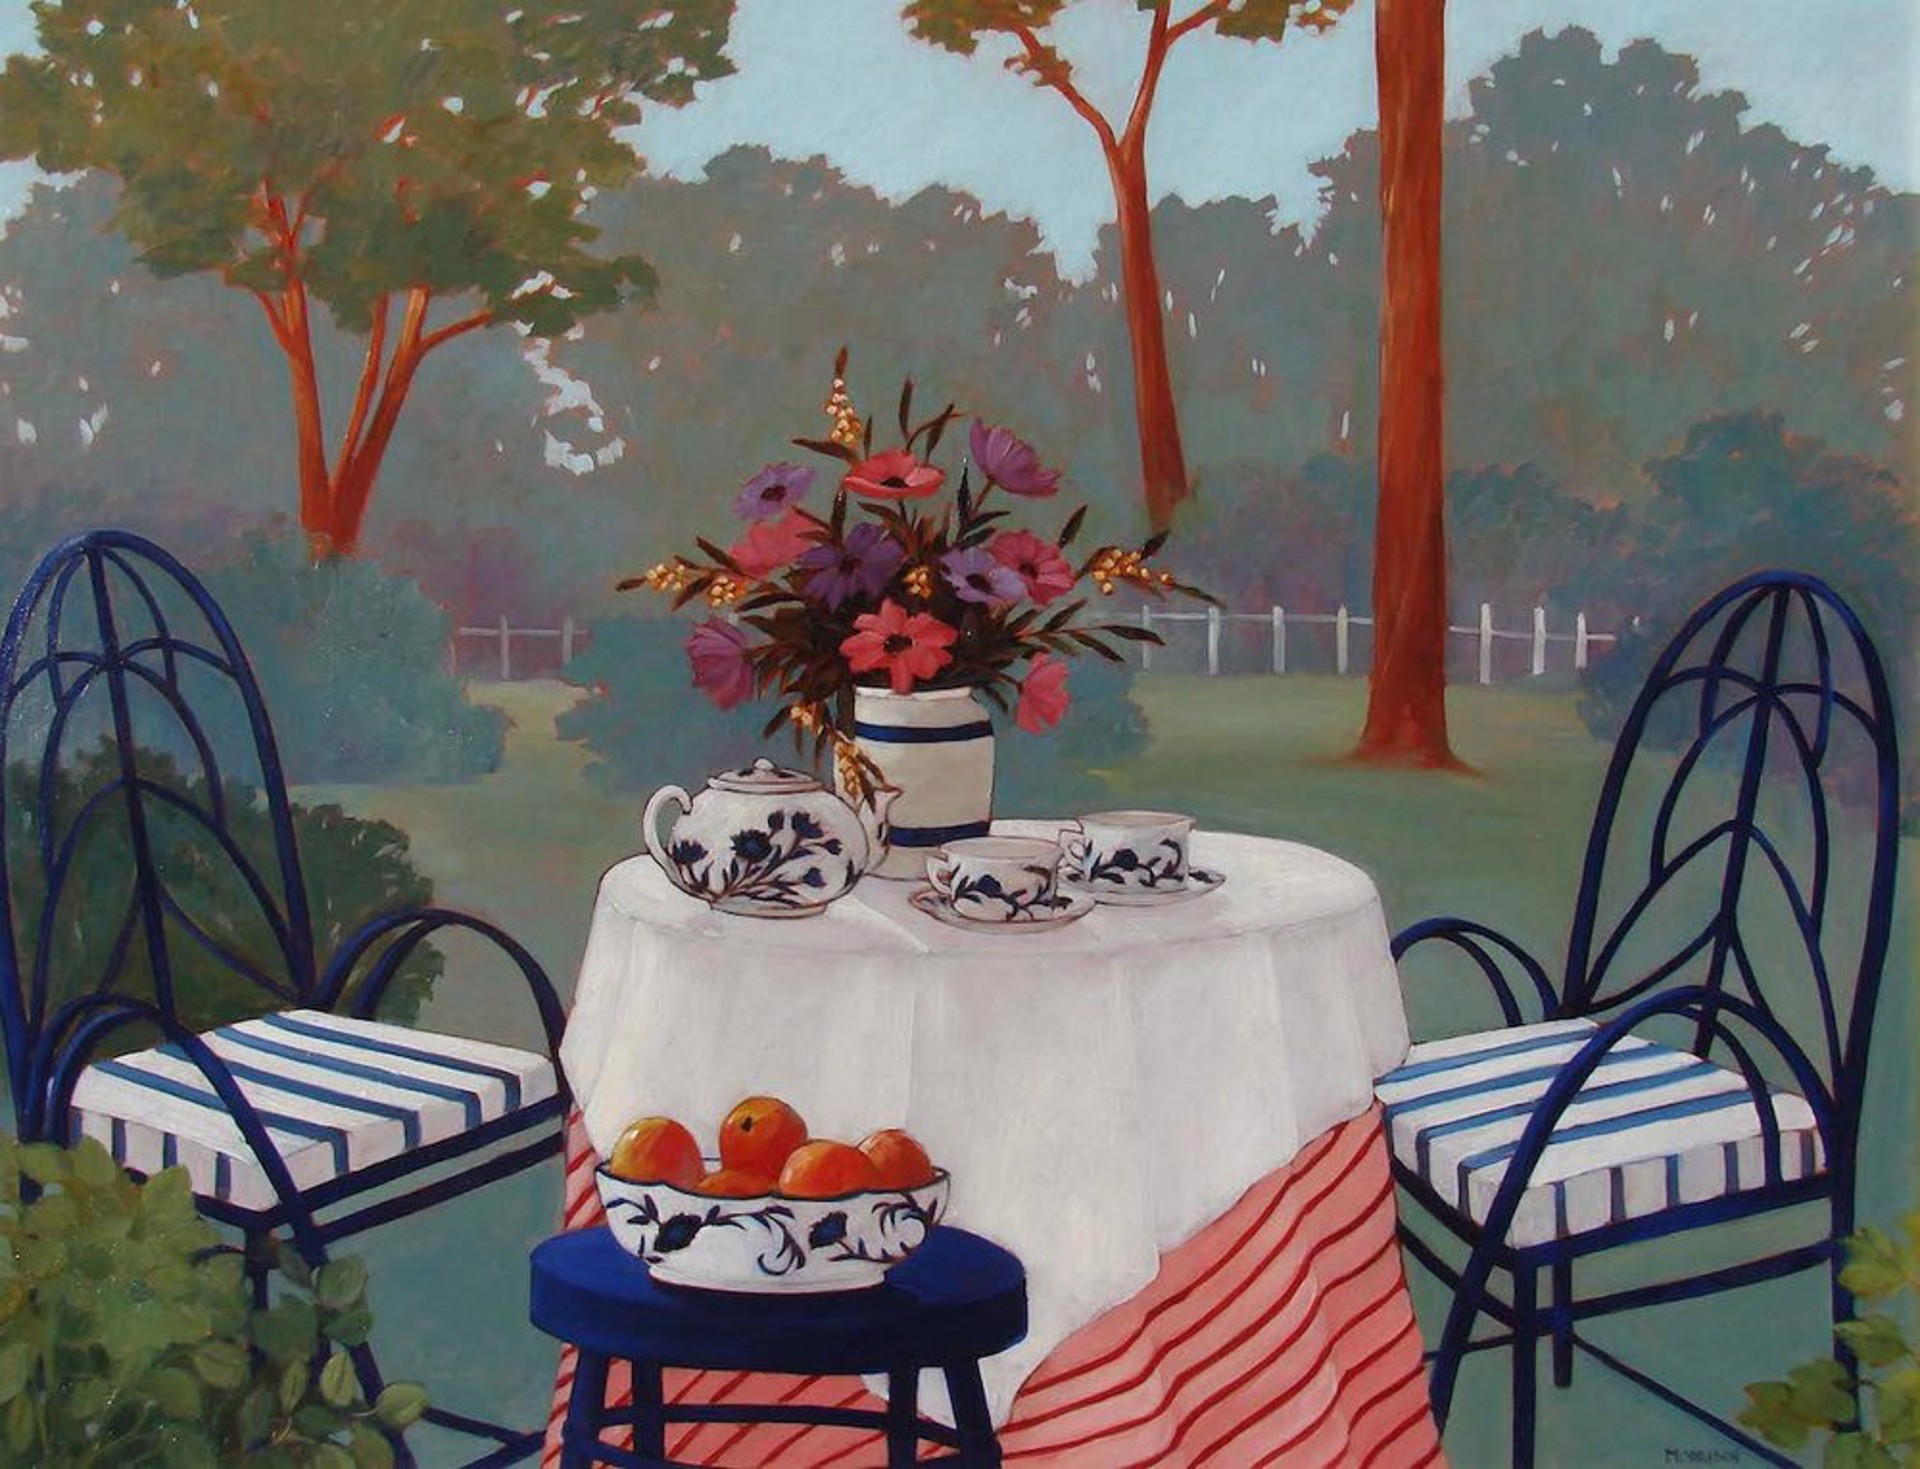 Tea in the Garden by Brenda W. Morrison